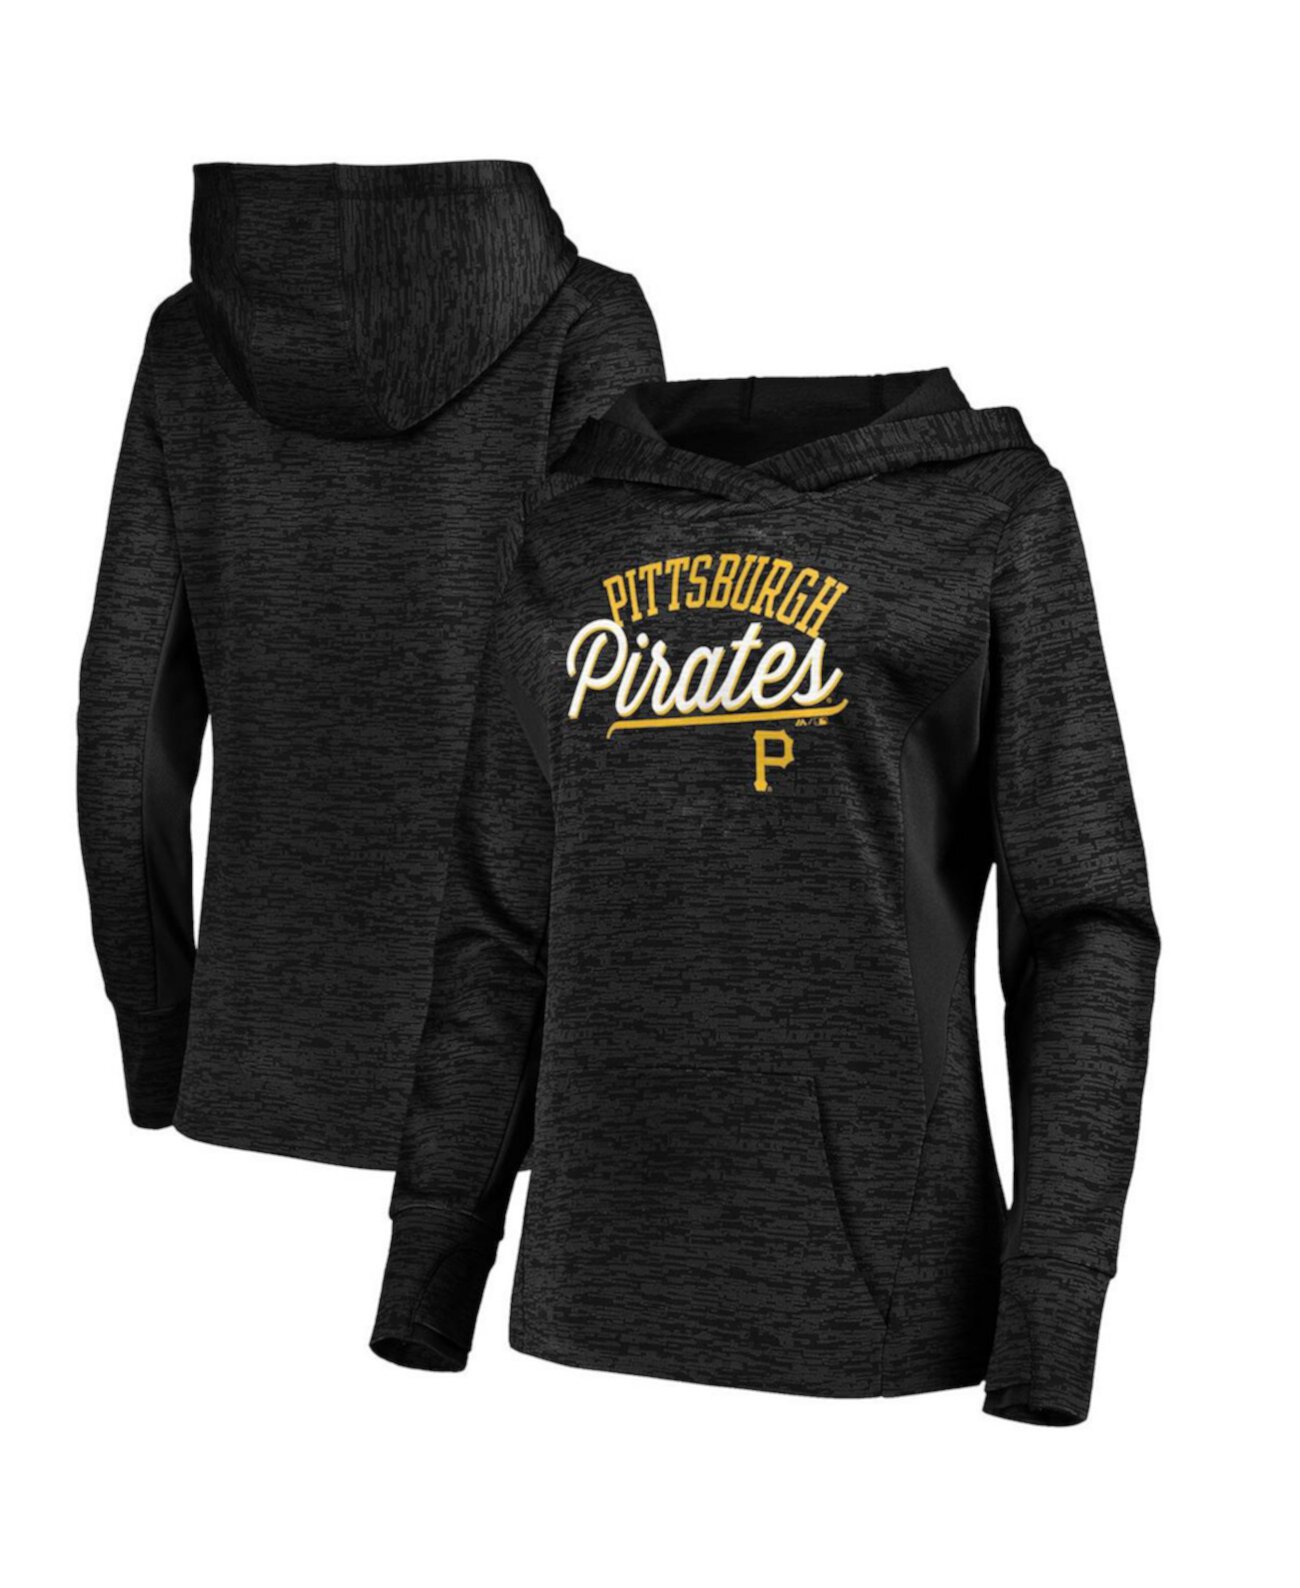 Женский пуловер с капюшоном Simplicity Pittsburgh Pirates из меланжевой ткани черного цвета Majestic